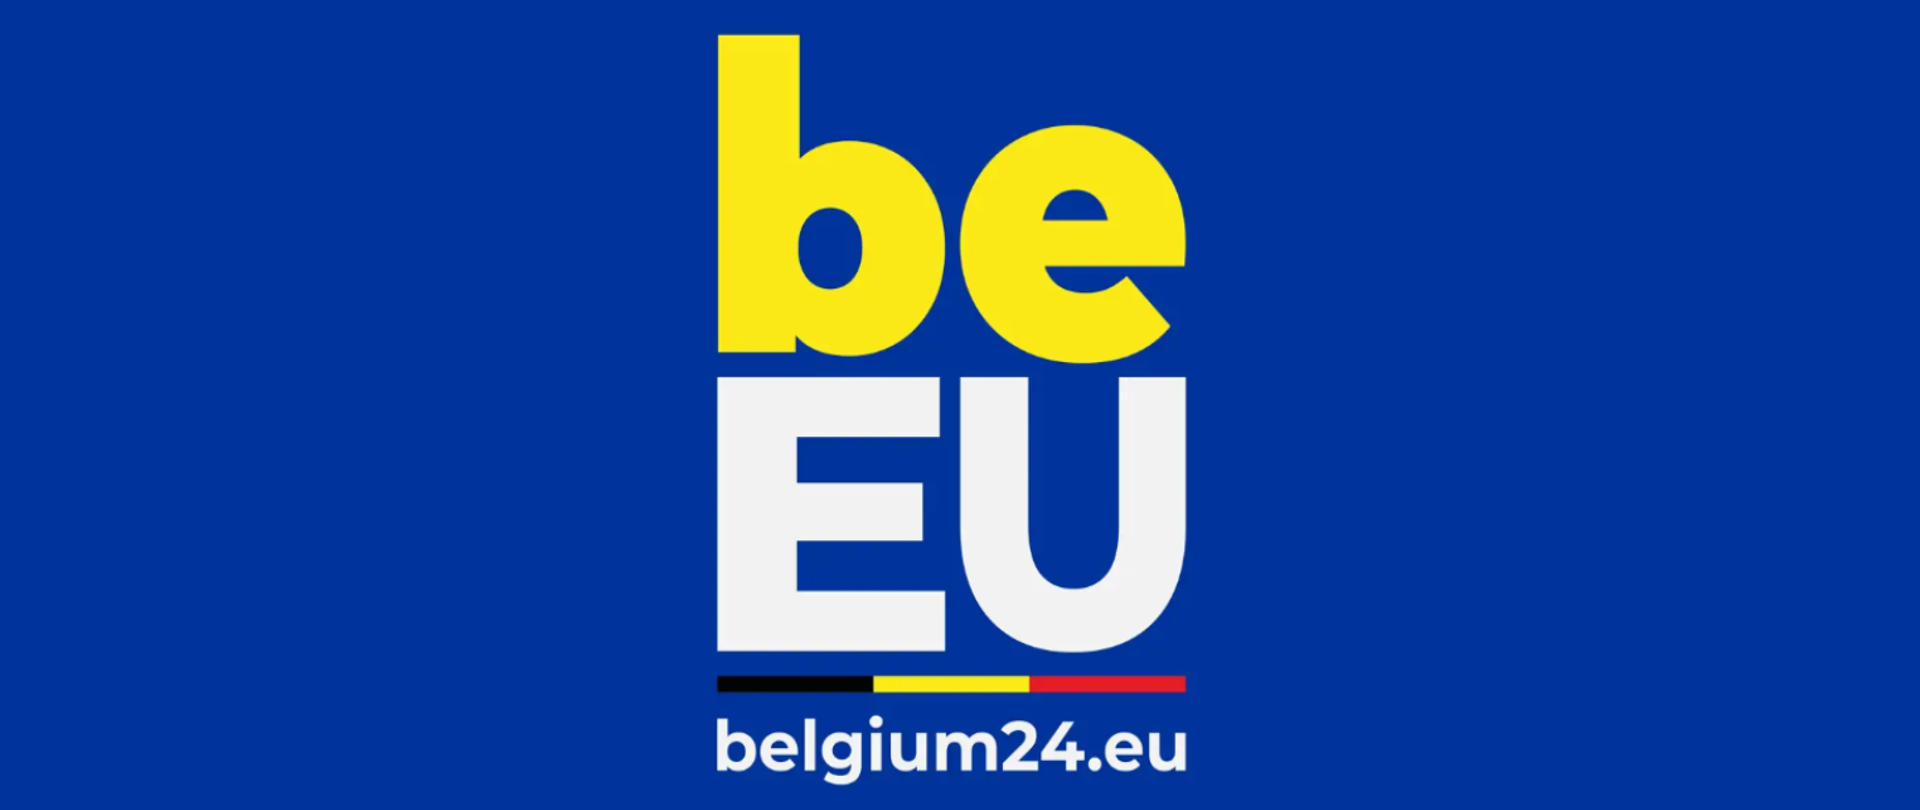 Na granatowym tle, żółto-biały napis "be EU. belgium24.eu"